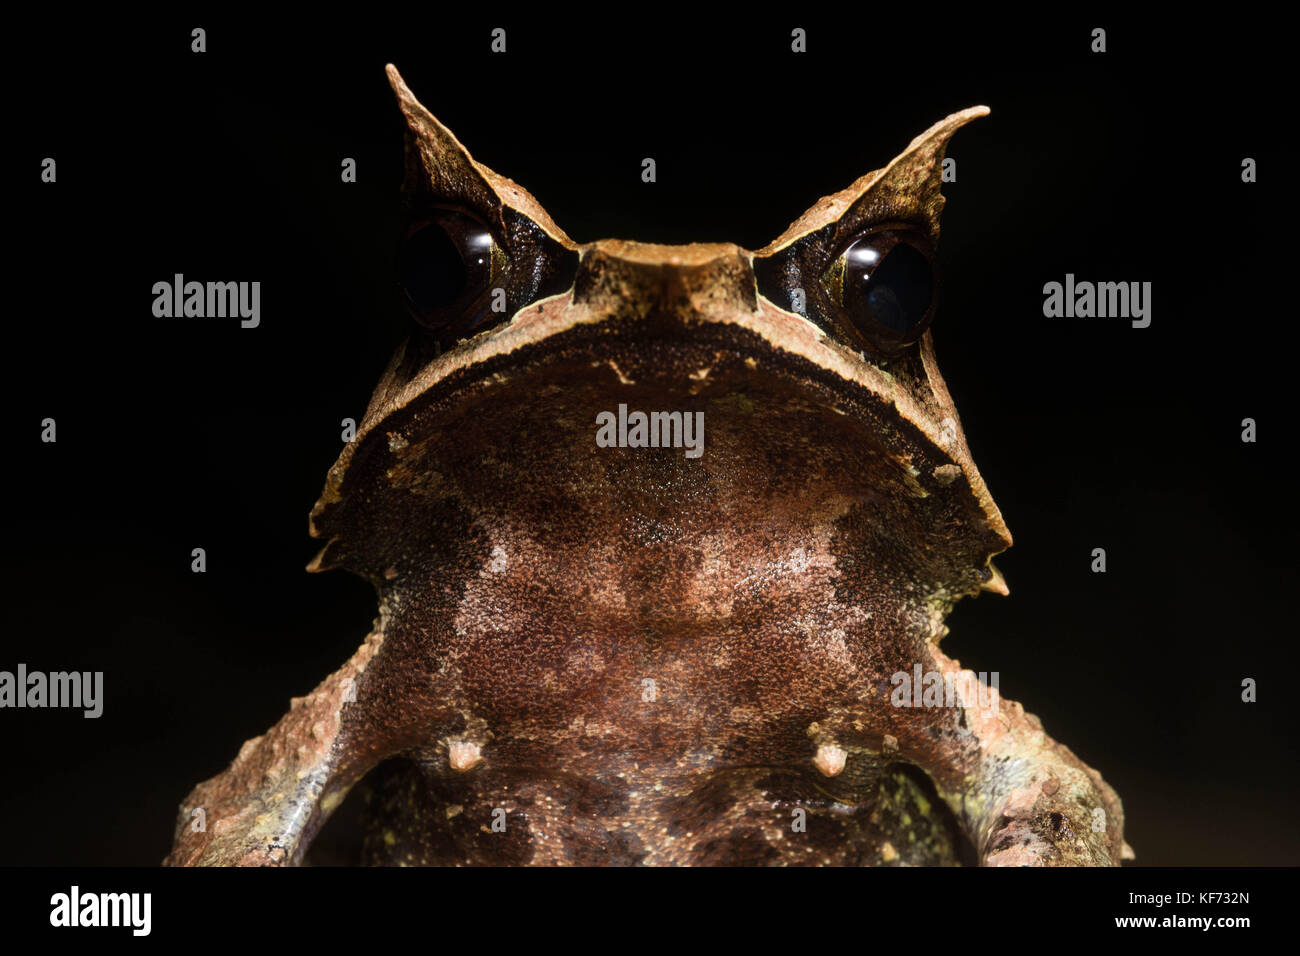 Un portrait d'un long-nez de grenouille (Megophrys nasuta cornu) à partir de la jungle de Bornéo. Banque D'Images